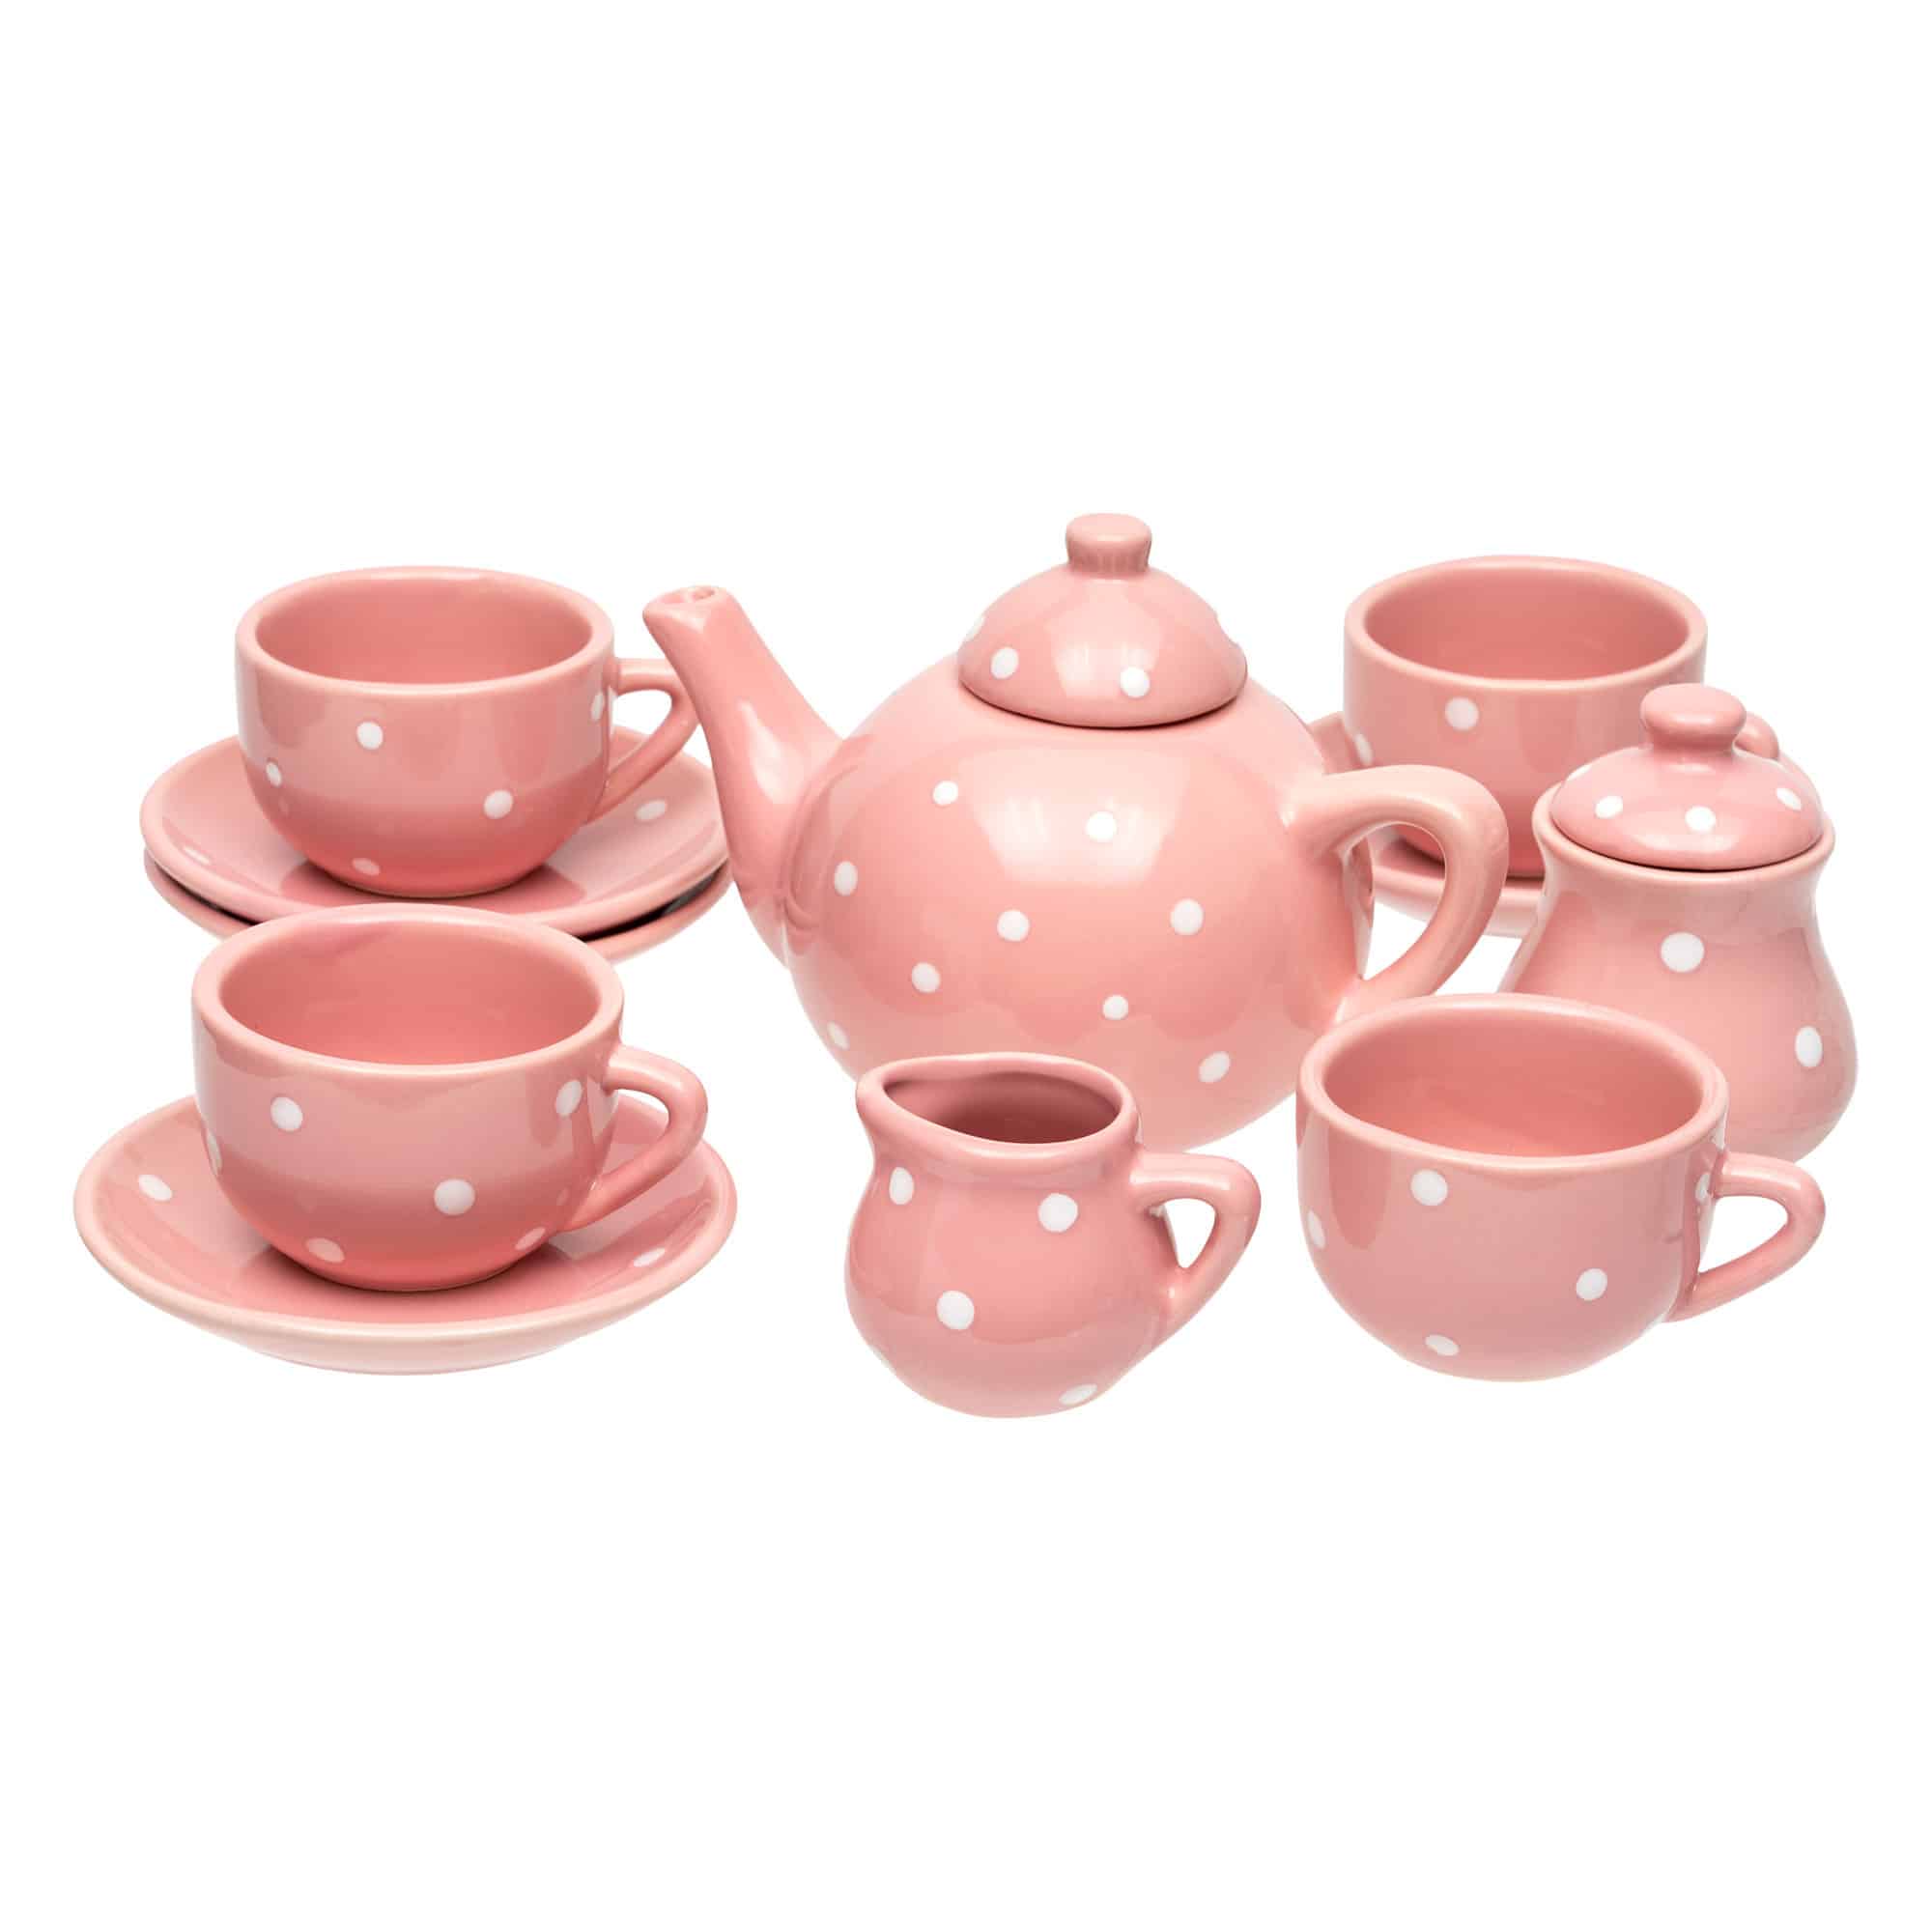 https://www.onlinetoys.com.au/wp-content/uploads/2021/12/children-13-piece-porcelain-picnic-tea-set-red-polkadots.jpg